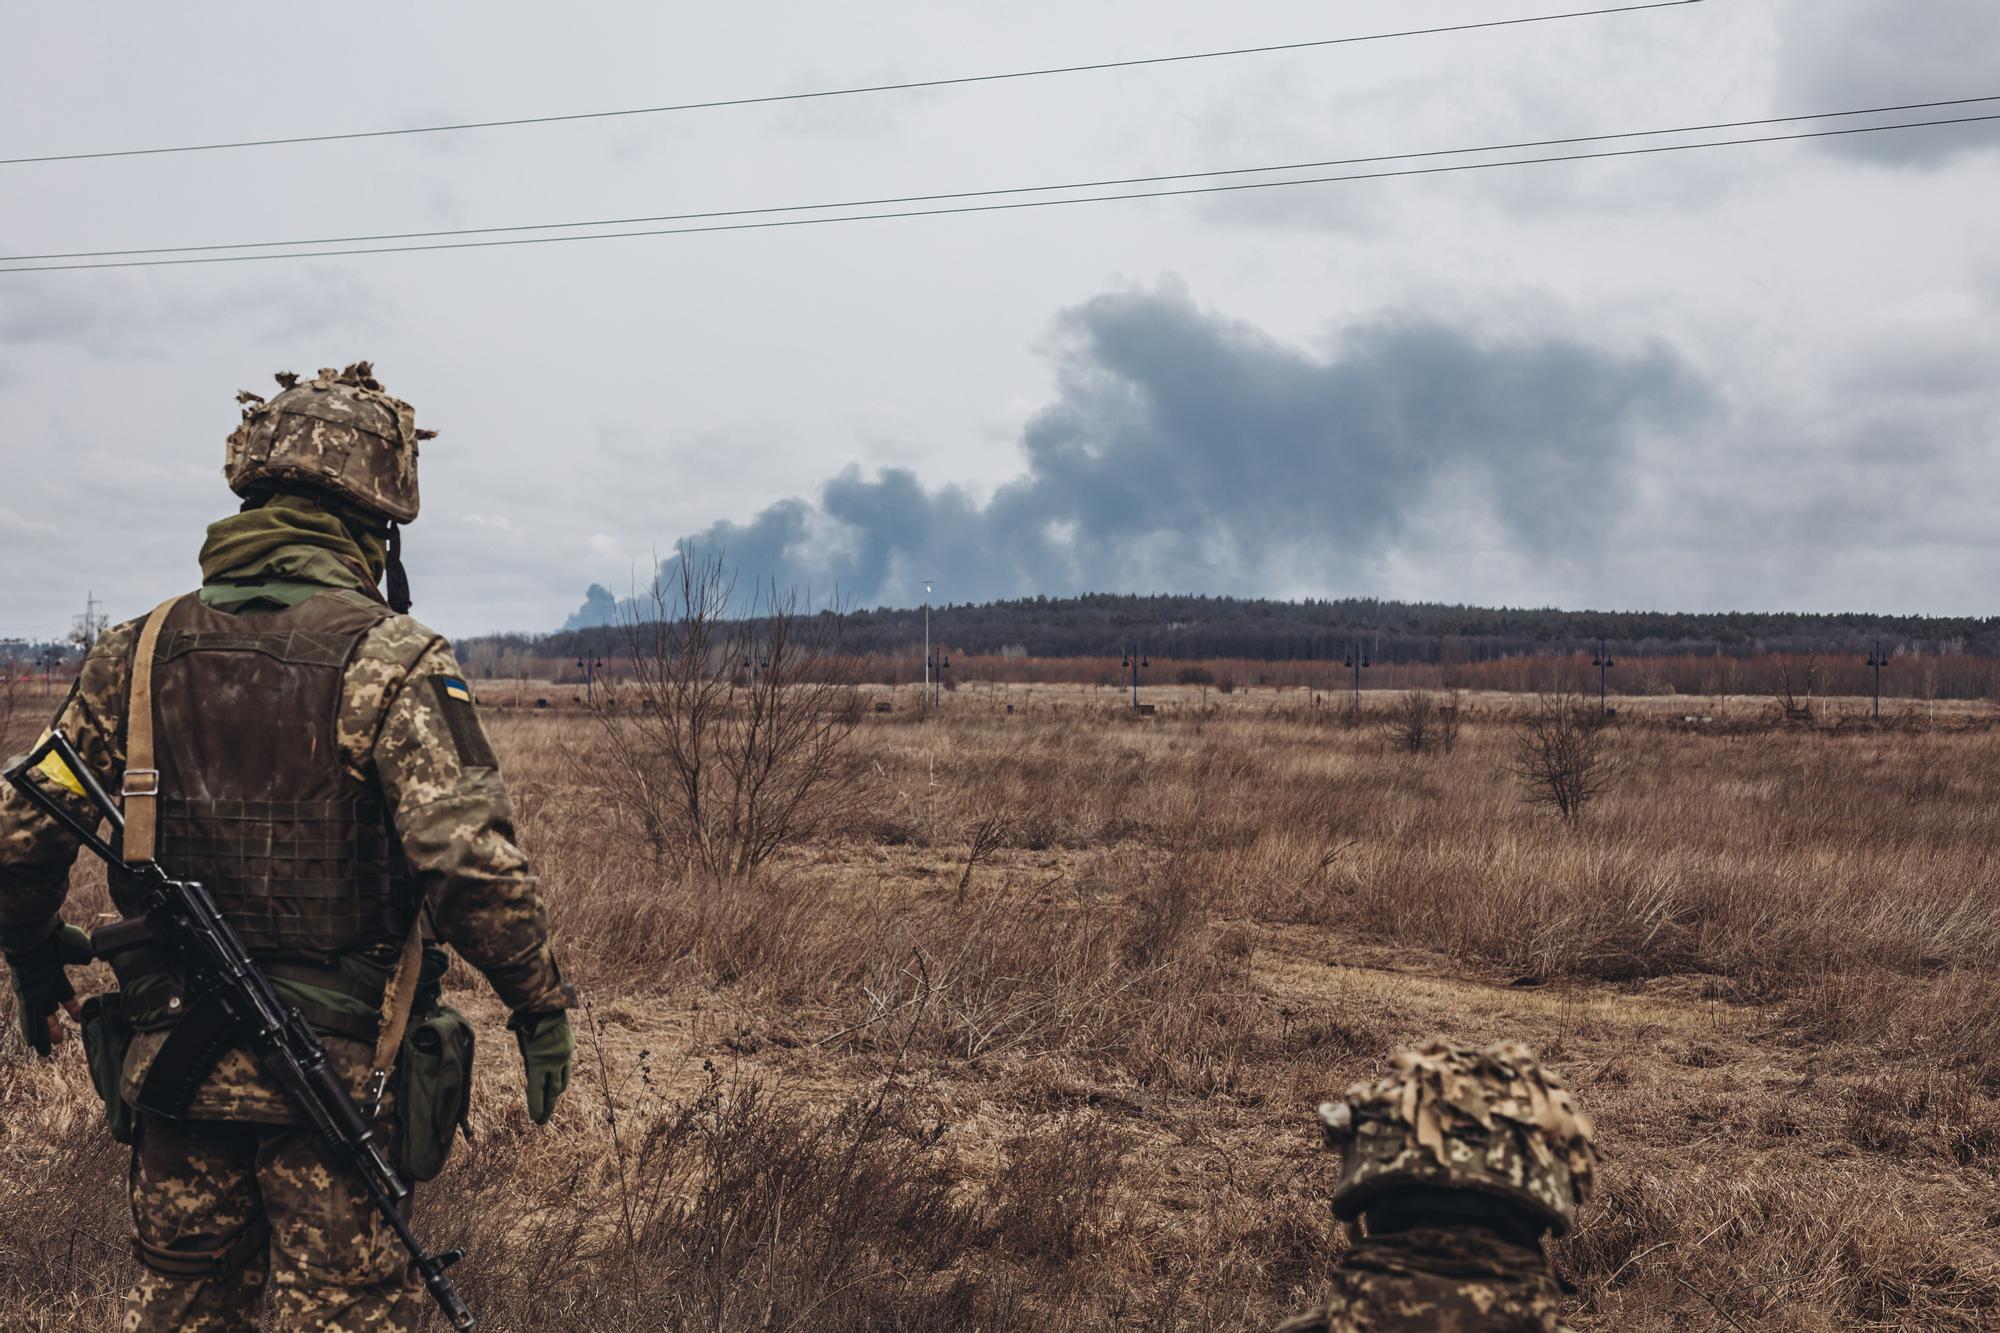 Un soldado del ejercito ucraniano observa el humo de los bombardeos, a 4 de marzo de 2022, en Irpin (Ucrania). Ucrania cumple nueve días sumida en un conflicto bélico tras el inicio de los ataques por parte de Rusia, el pasado 24 de febrero. Durante la pa